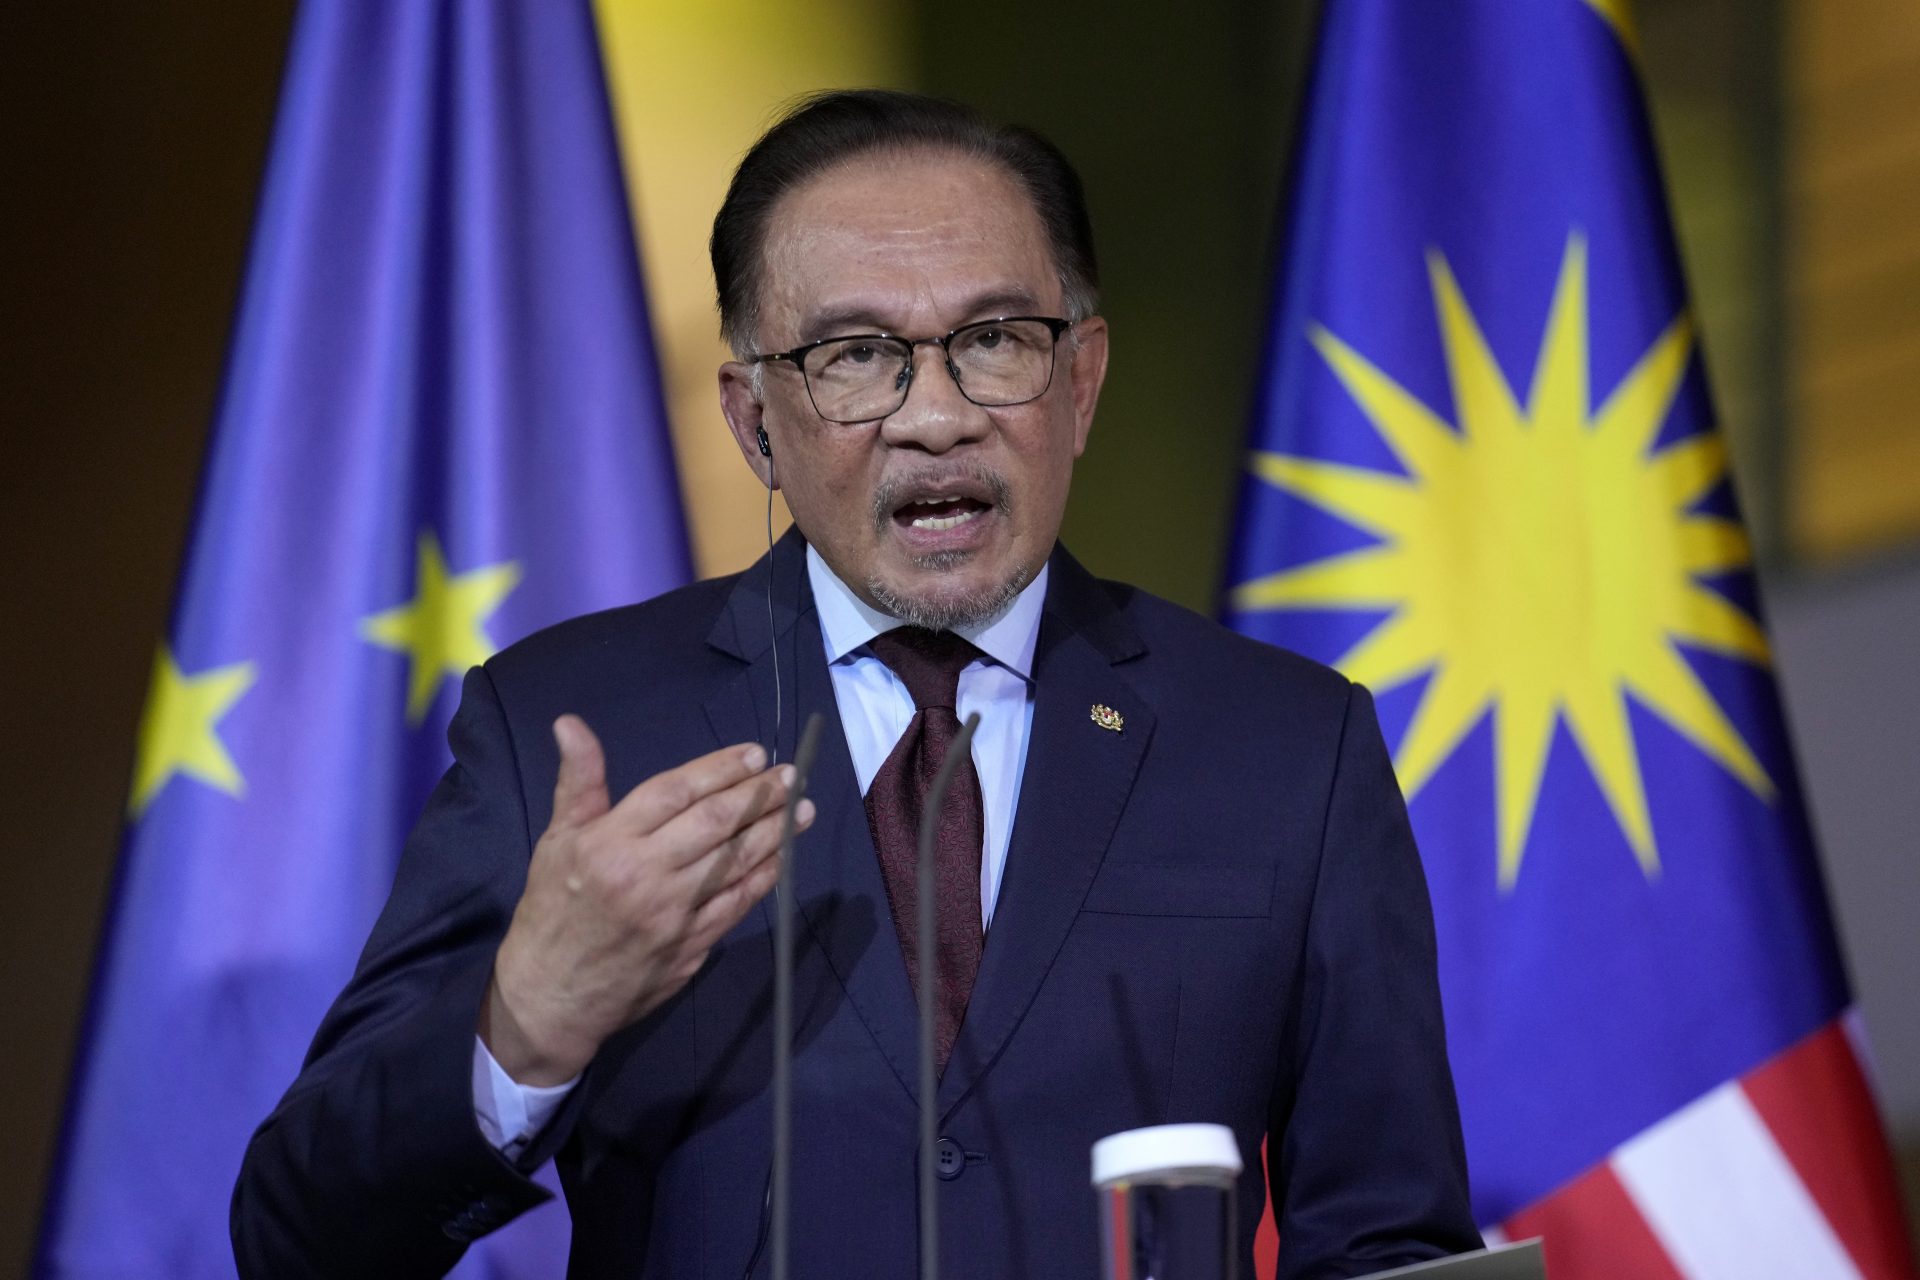 Anwar de Malaisie annonce une hausse record des salaires publics